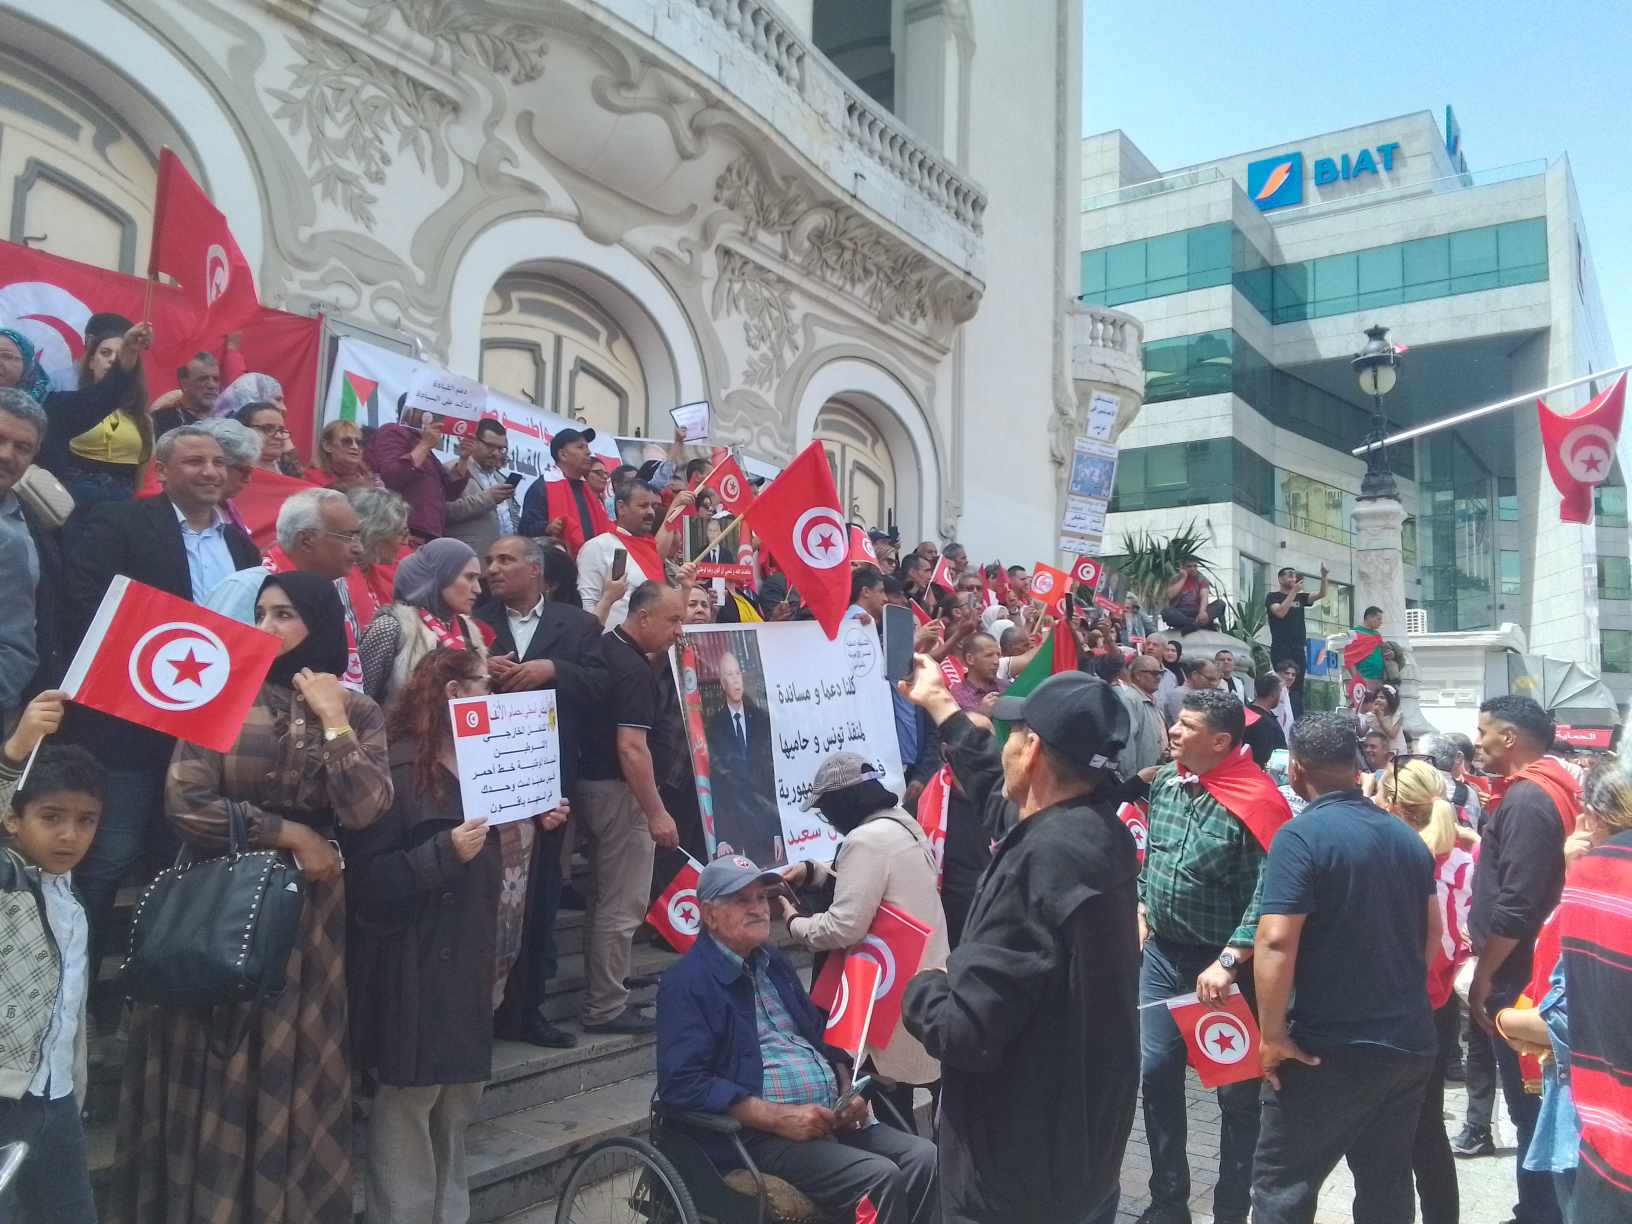 تونس تستعيد مجدها: مواطنون يتظاهرون دعما للرئيس قيس سعيد ورفضا للتدخل الأجنبي